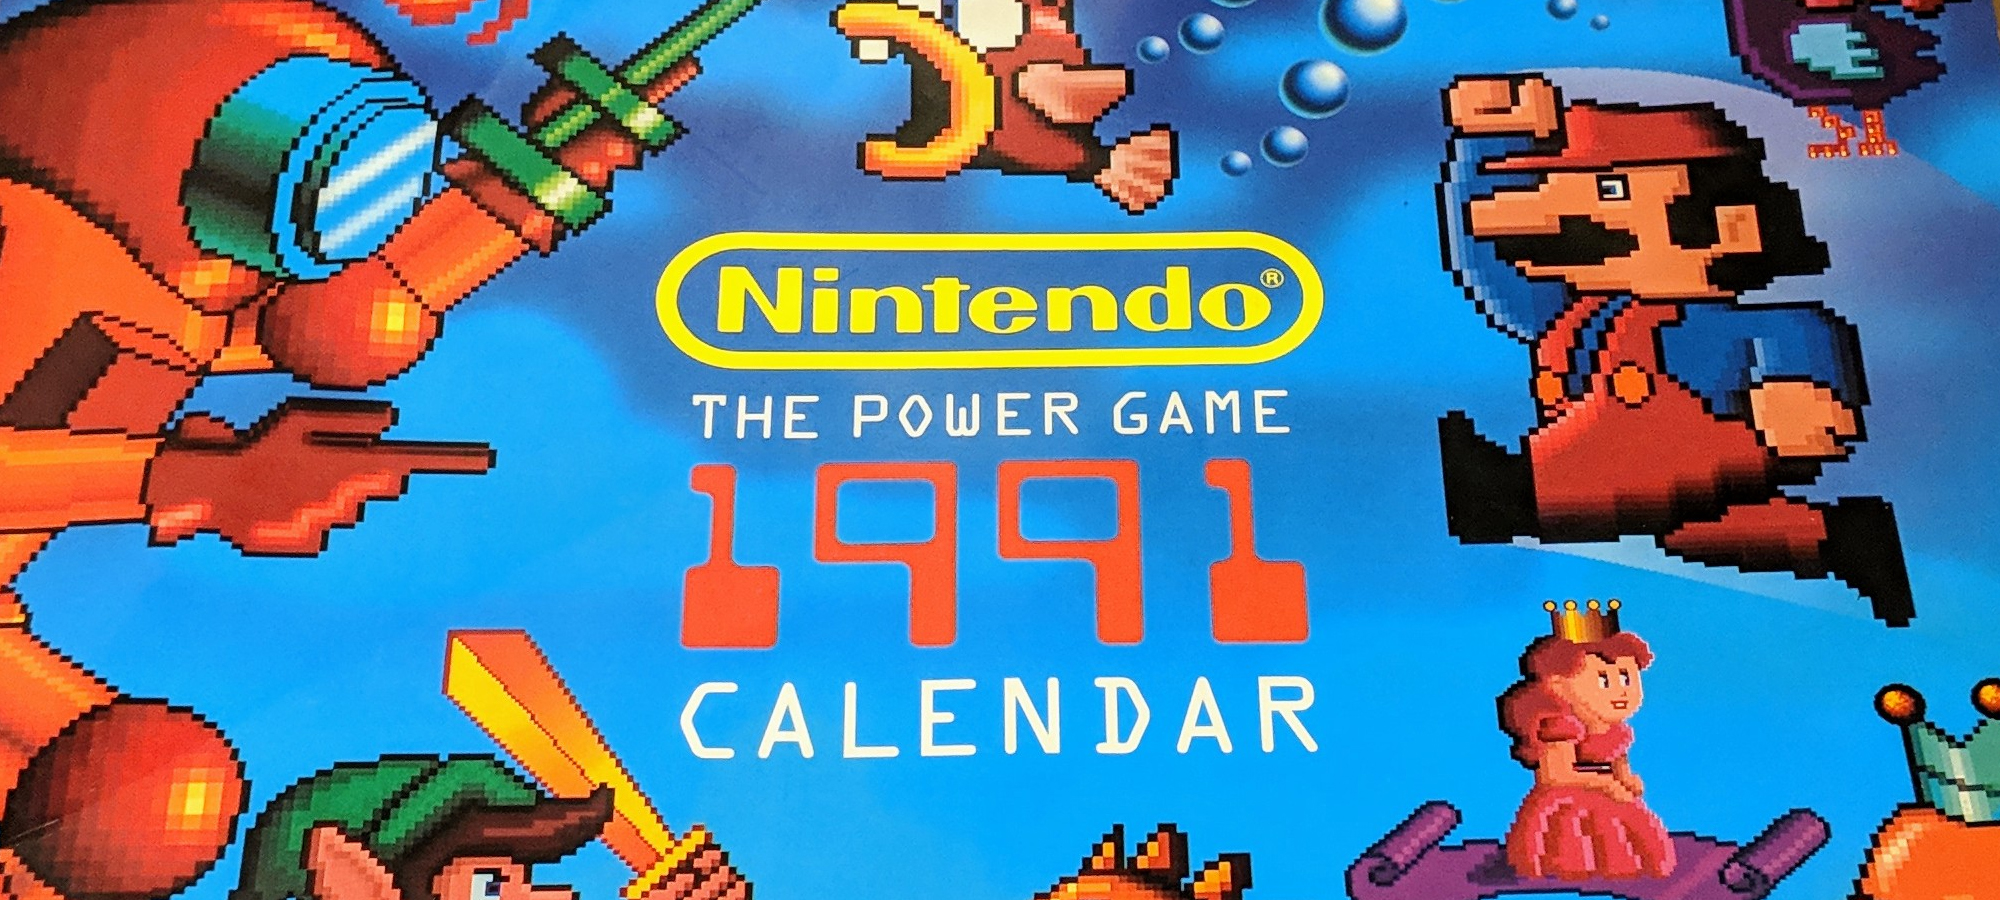 Nintendo календарь 1991